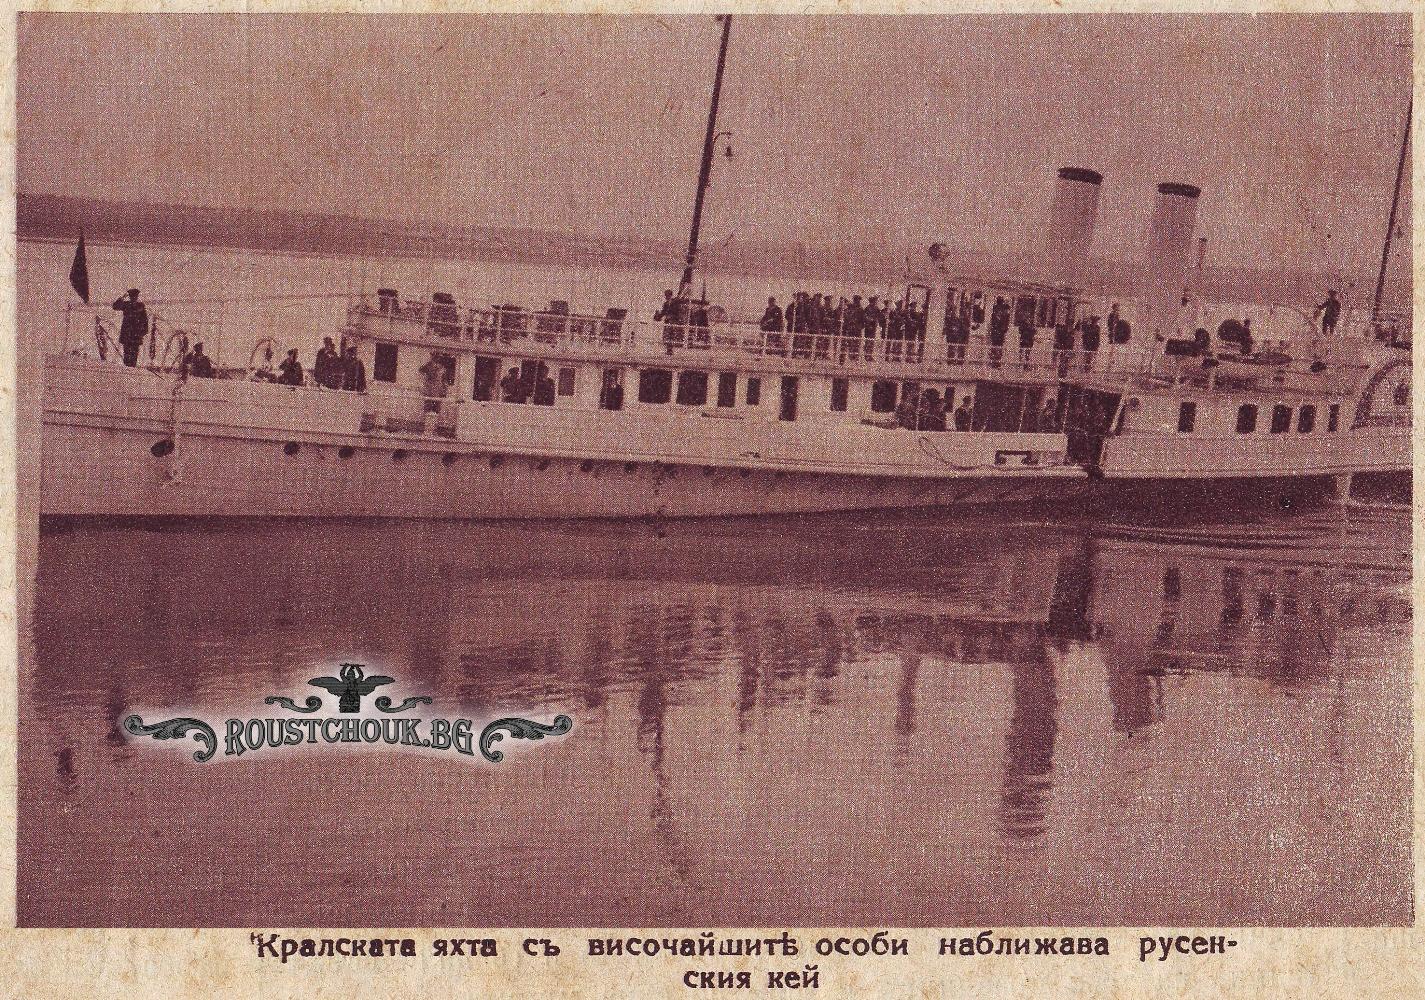 Кралската яхта „Стефан чел Маре“ с височайшите особи на борда